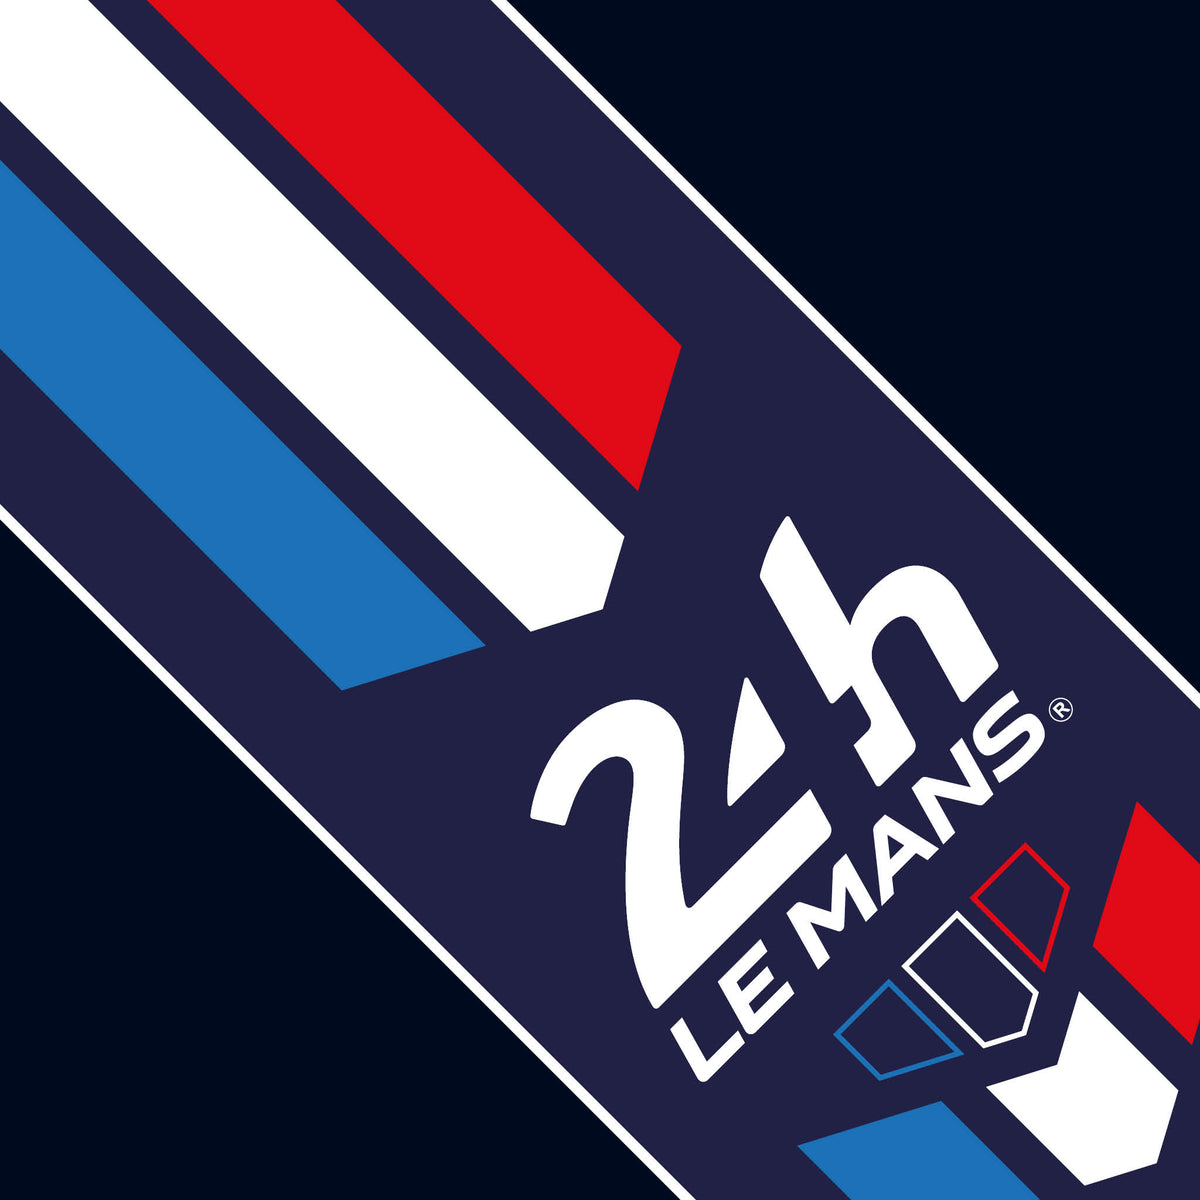 Official Le Mans Chevron Bonnet Stripe